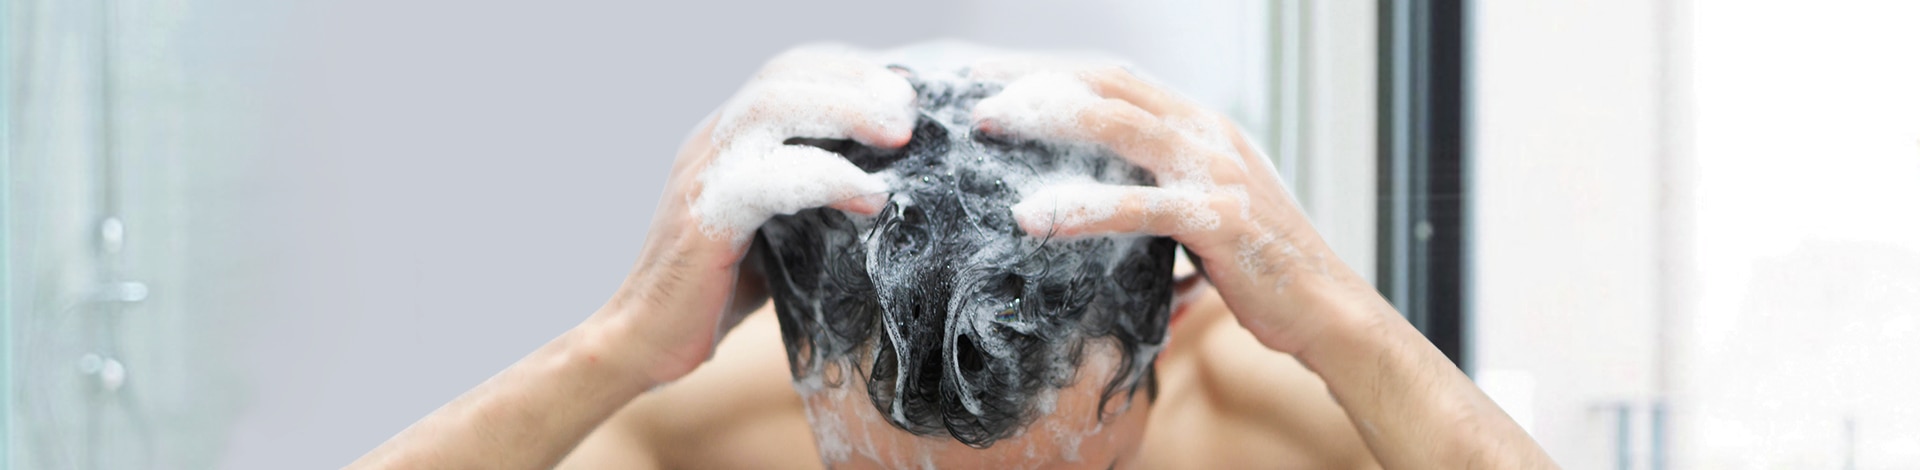 Homem passando shampoo no cabelo